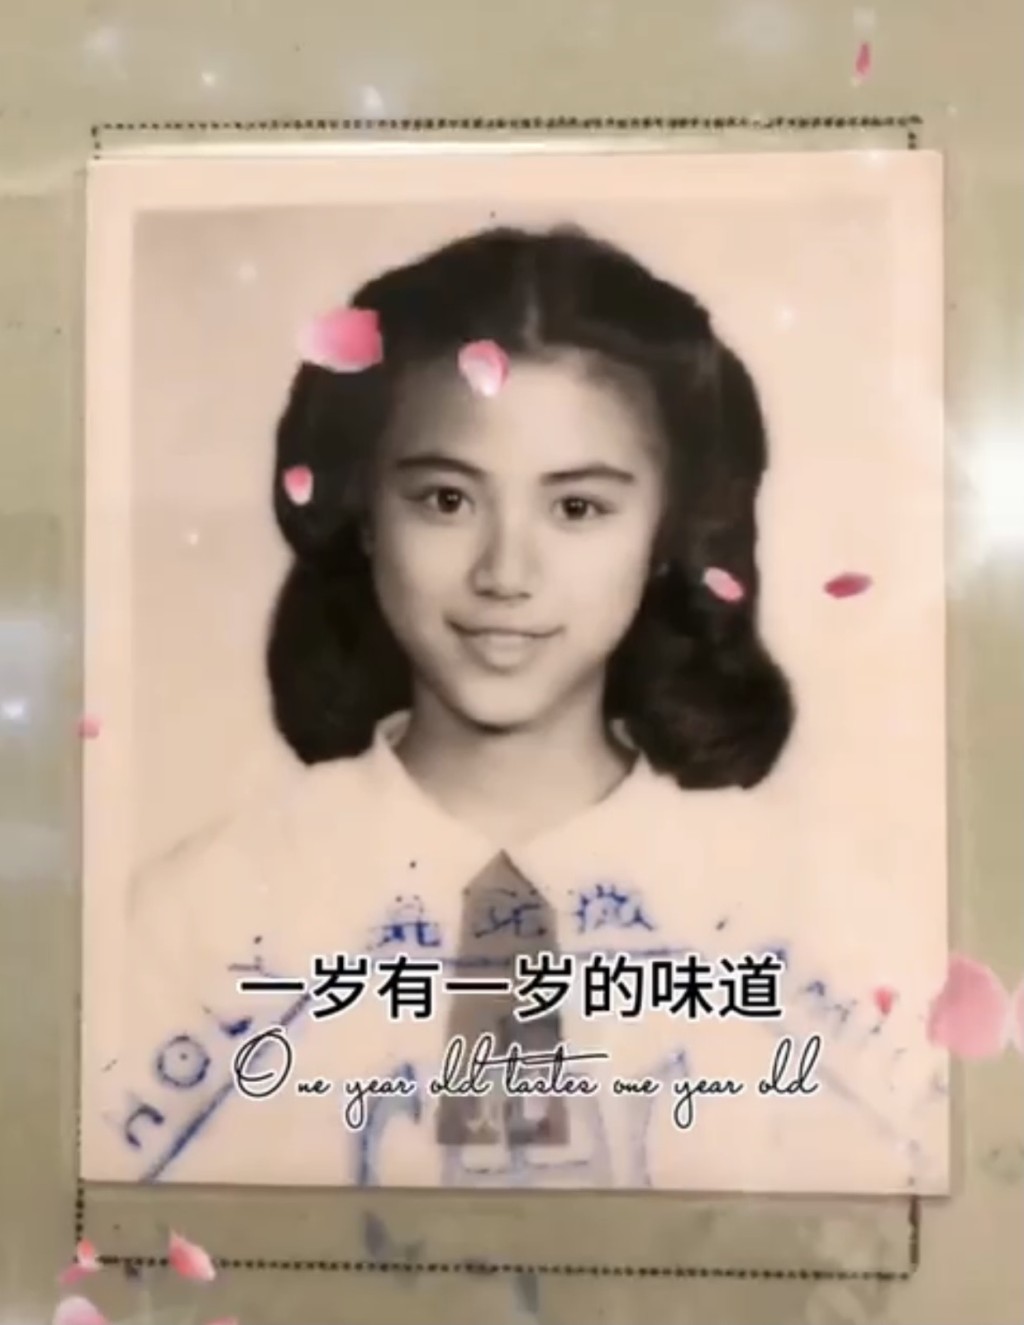 陈雅伦曾自爆学生照。